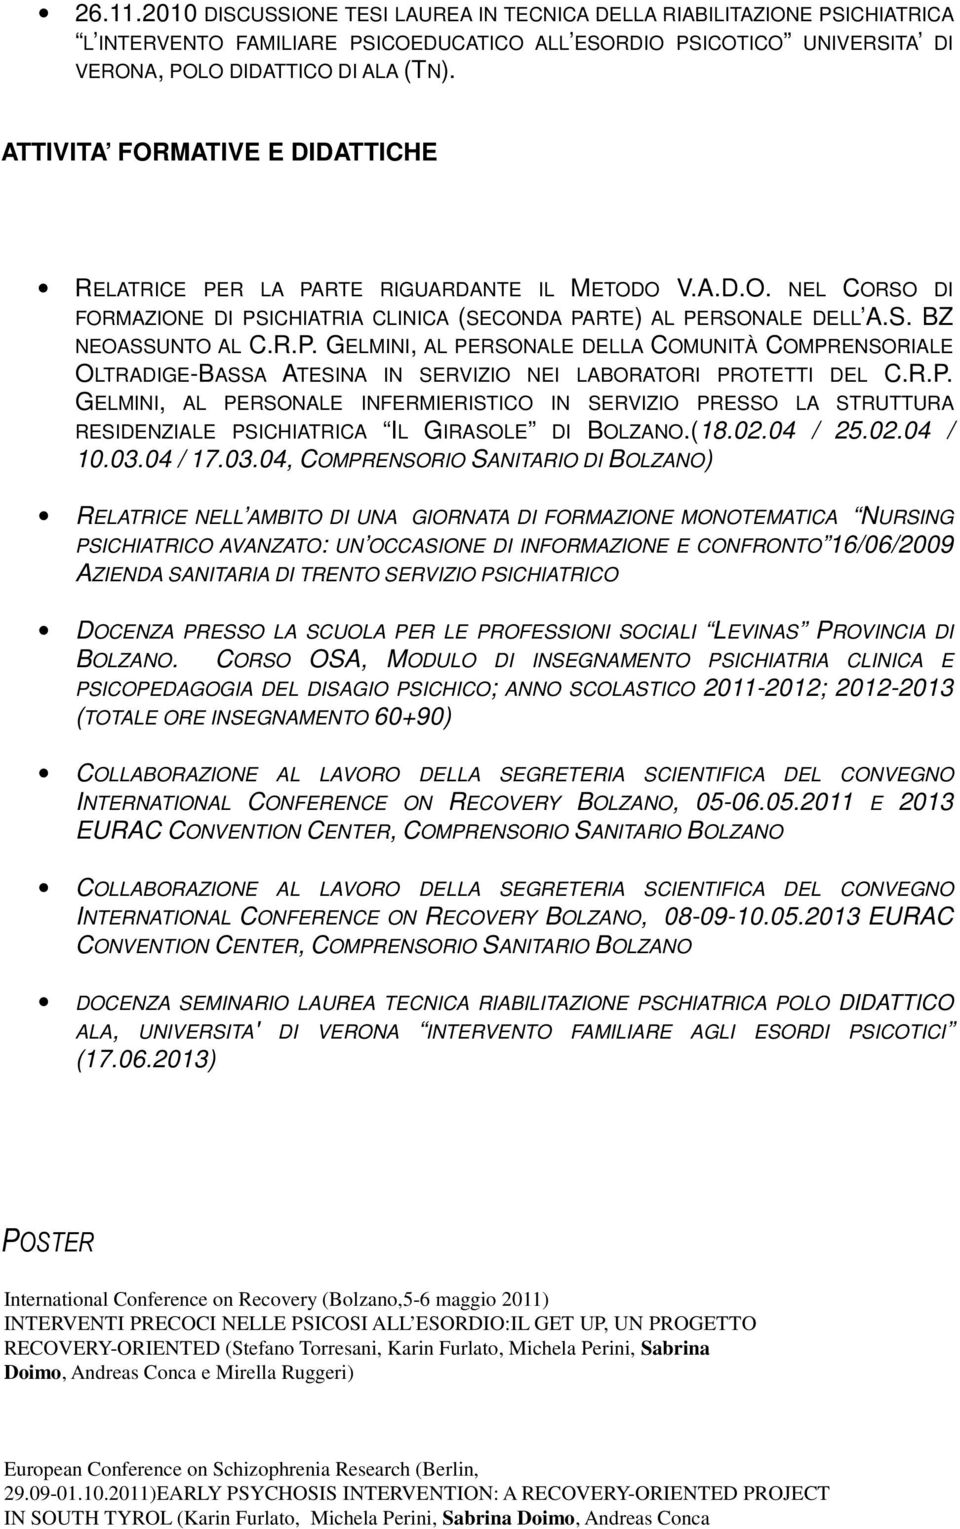 R.P. GELMINI, AL PERSONALE INFERMIERISTICO IN SERVIZIO PRESSO LA STRUTTURA RESIDENZIALE PSICHIATRICA IL GIRASOLE DI BOLZANO.(18.02.04 / 25.02.04 / 10.03.